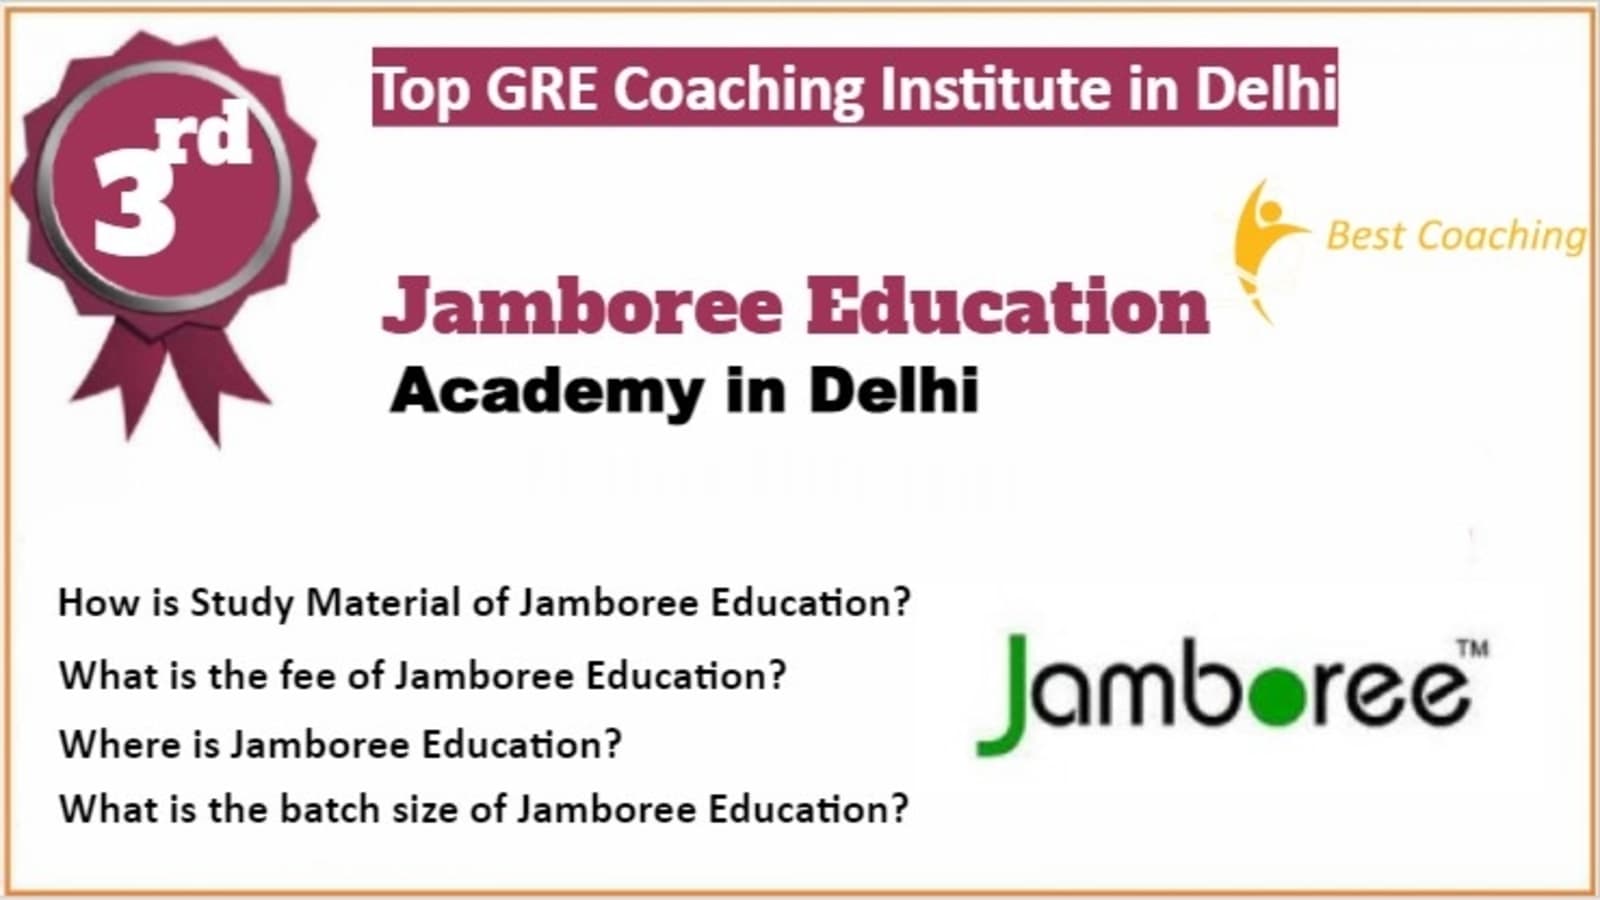 Rank 3 Best GRE Coaching in Delhi